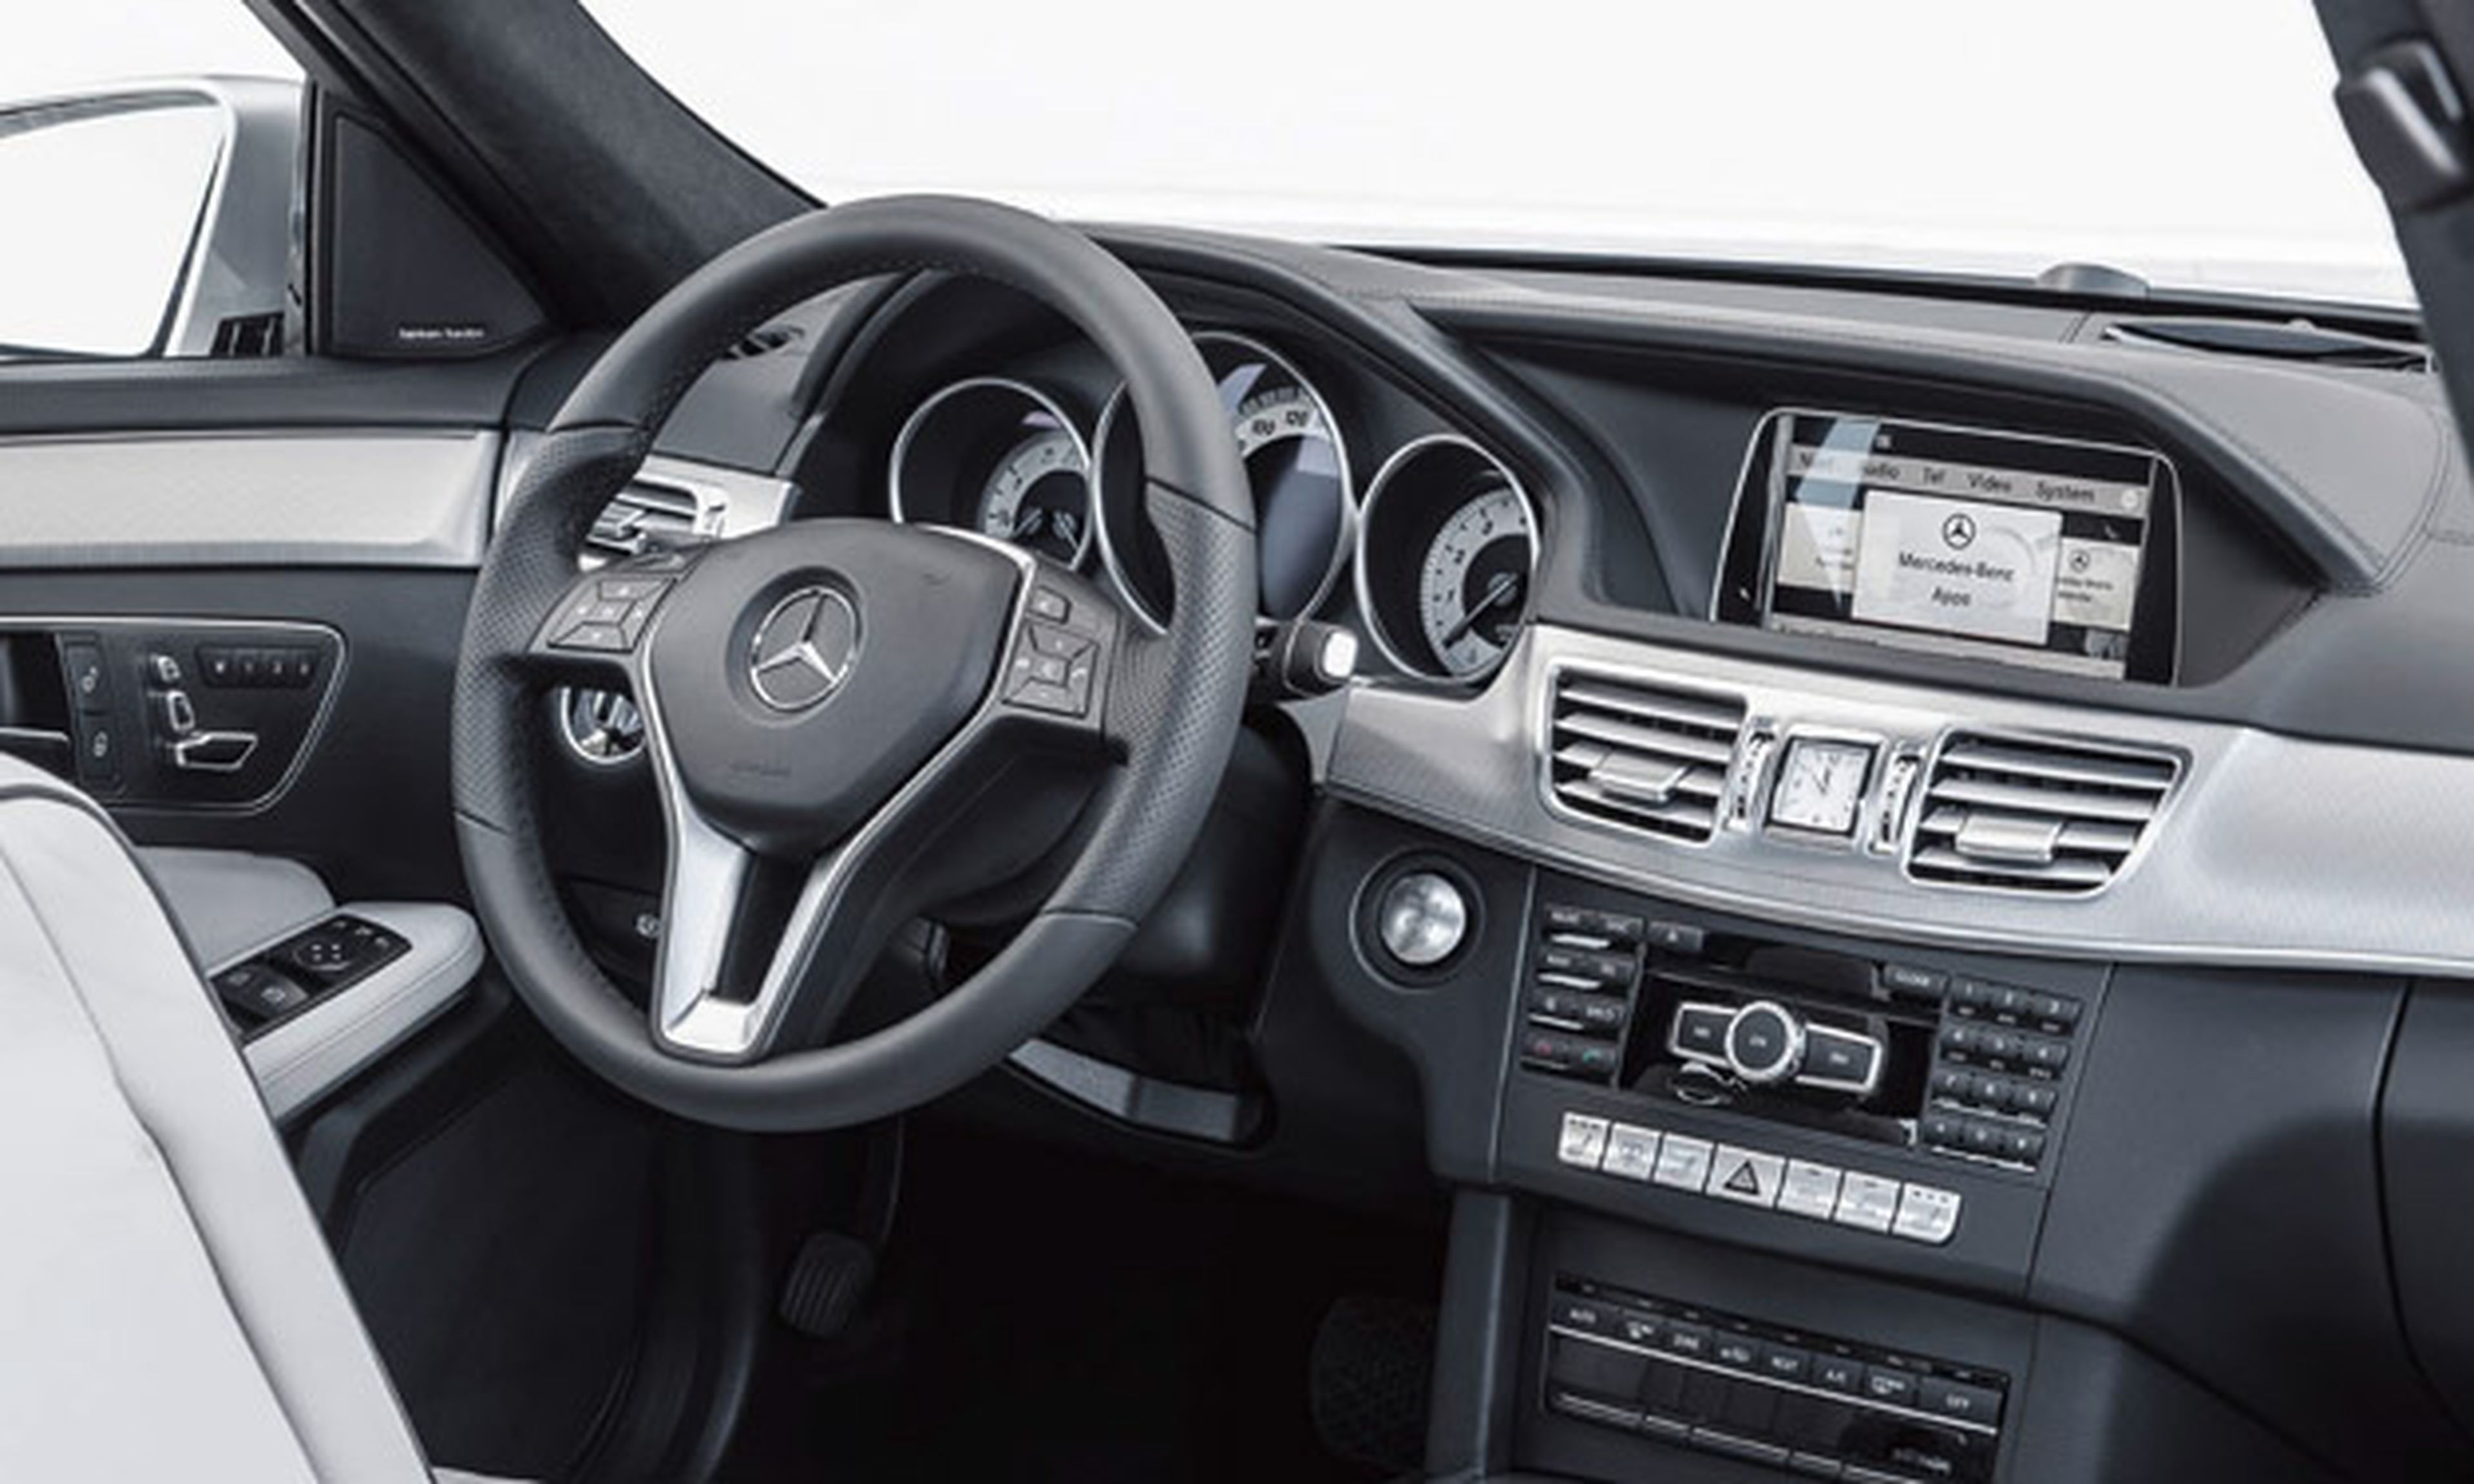 Mercedes Clase E, con conducción autónoma en autopista